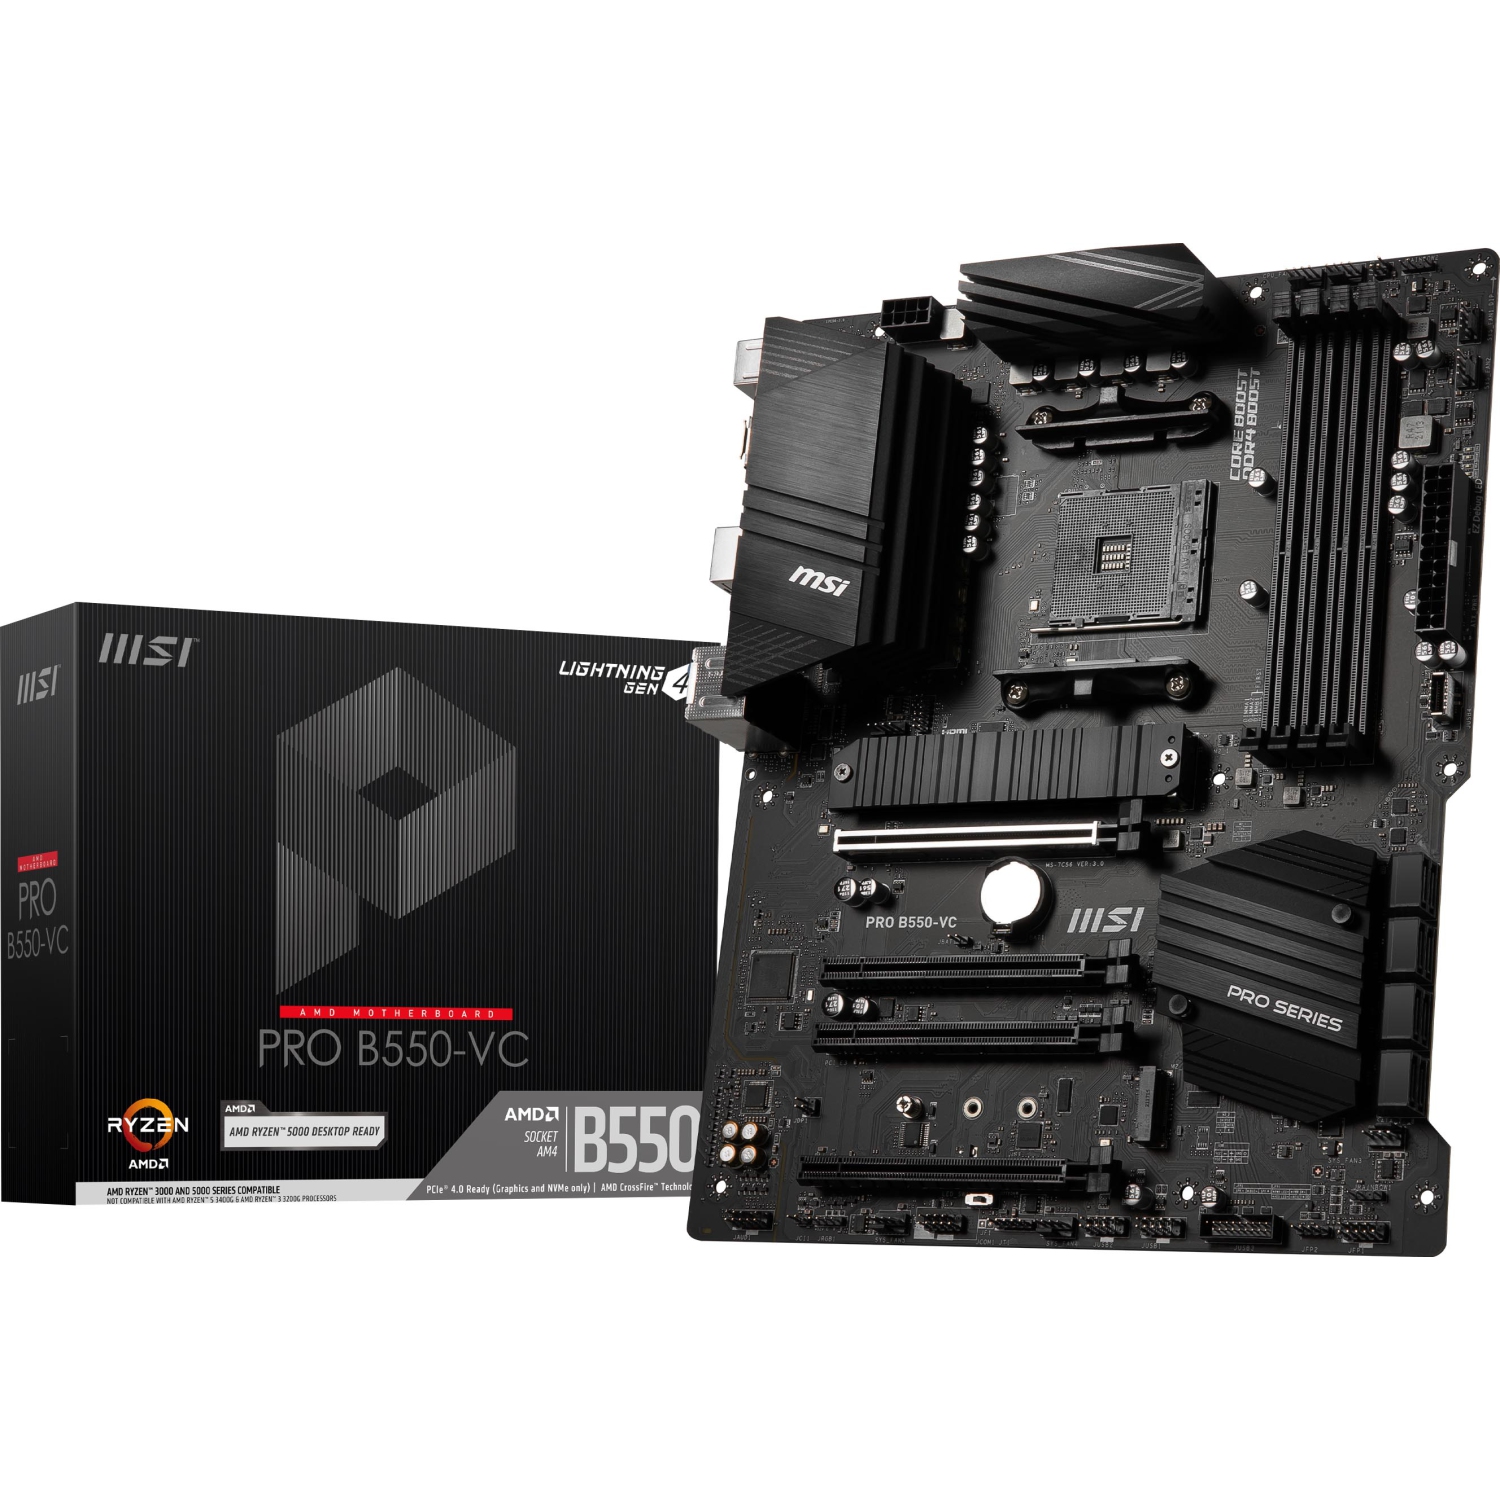 MSI PRO B550-VC, AMD B550 Socket AM4, 4 Dimms DDR4, PCIE 4.0, M.2 x 2, USB 3.2 Ports, JRGB JRAINBOW Motherboard